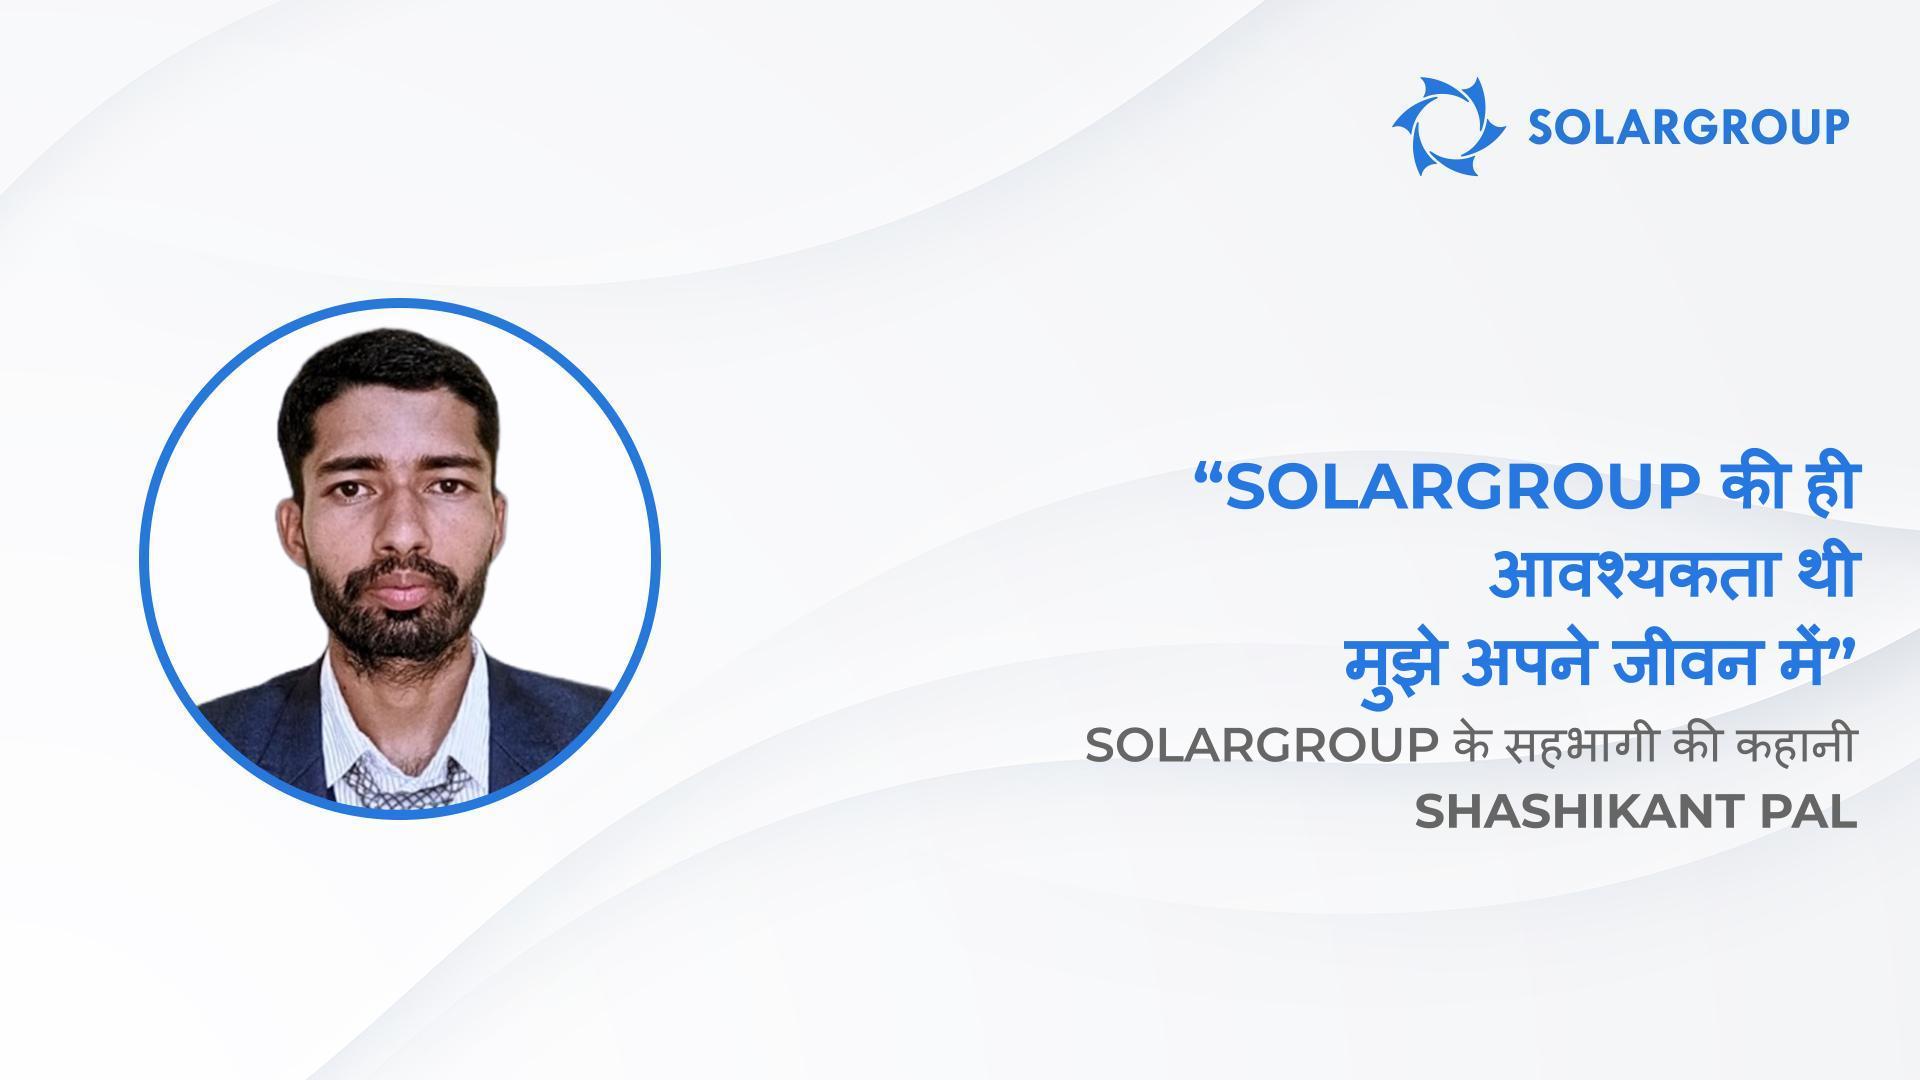 "Sovelmash" देखते ही मुझे पसंद आ गया | SOLARGROUP के सहभागी की कहानी Shashikant Pal, भारत